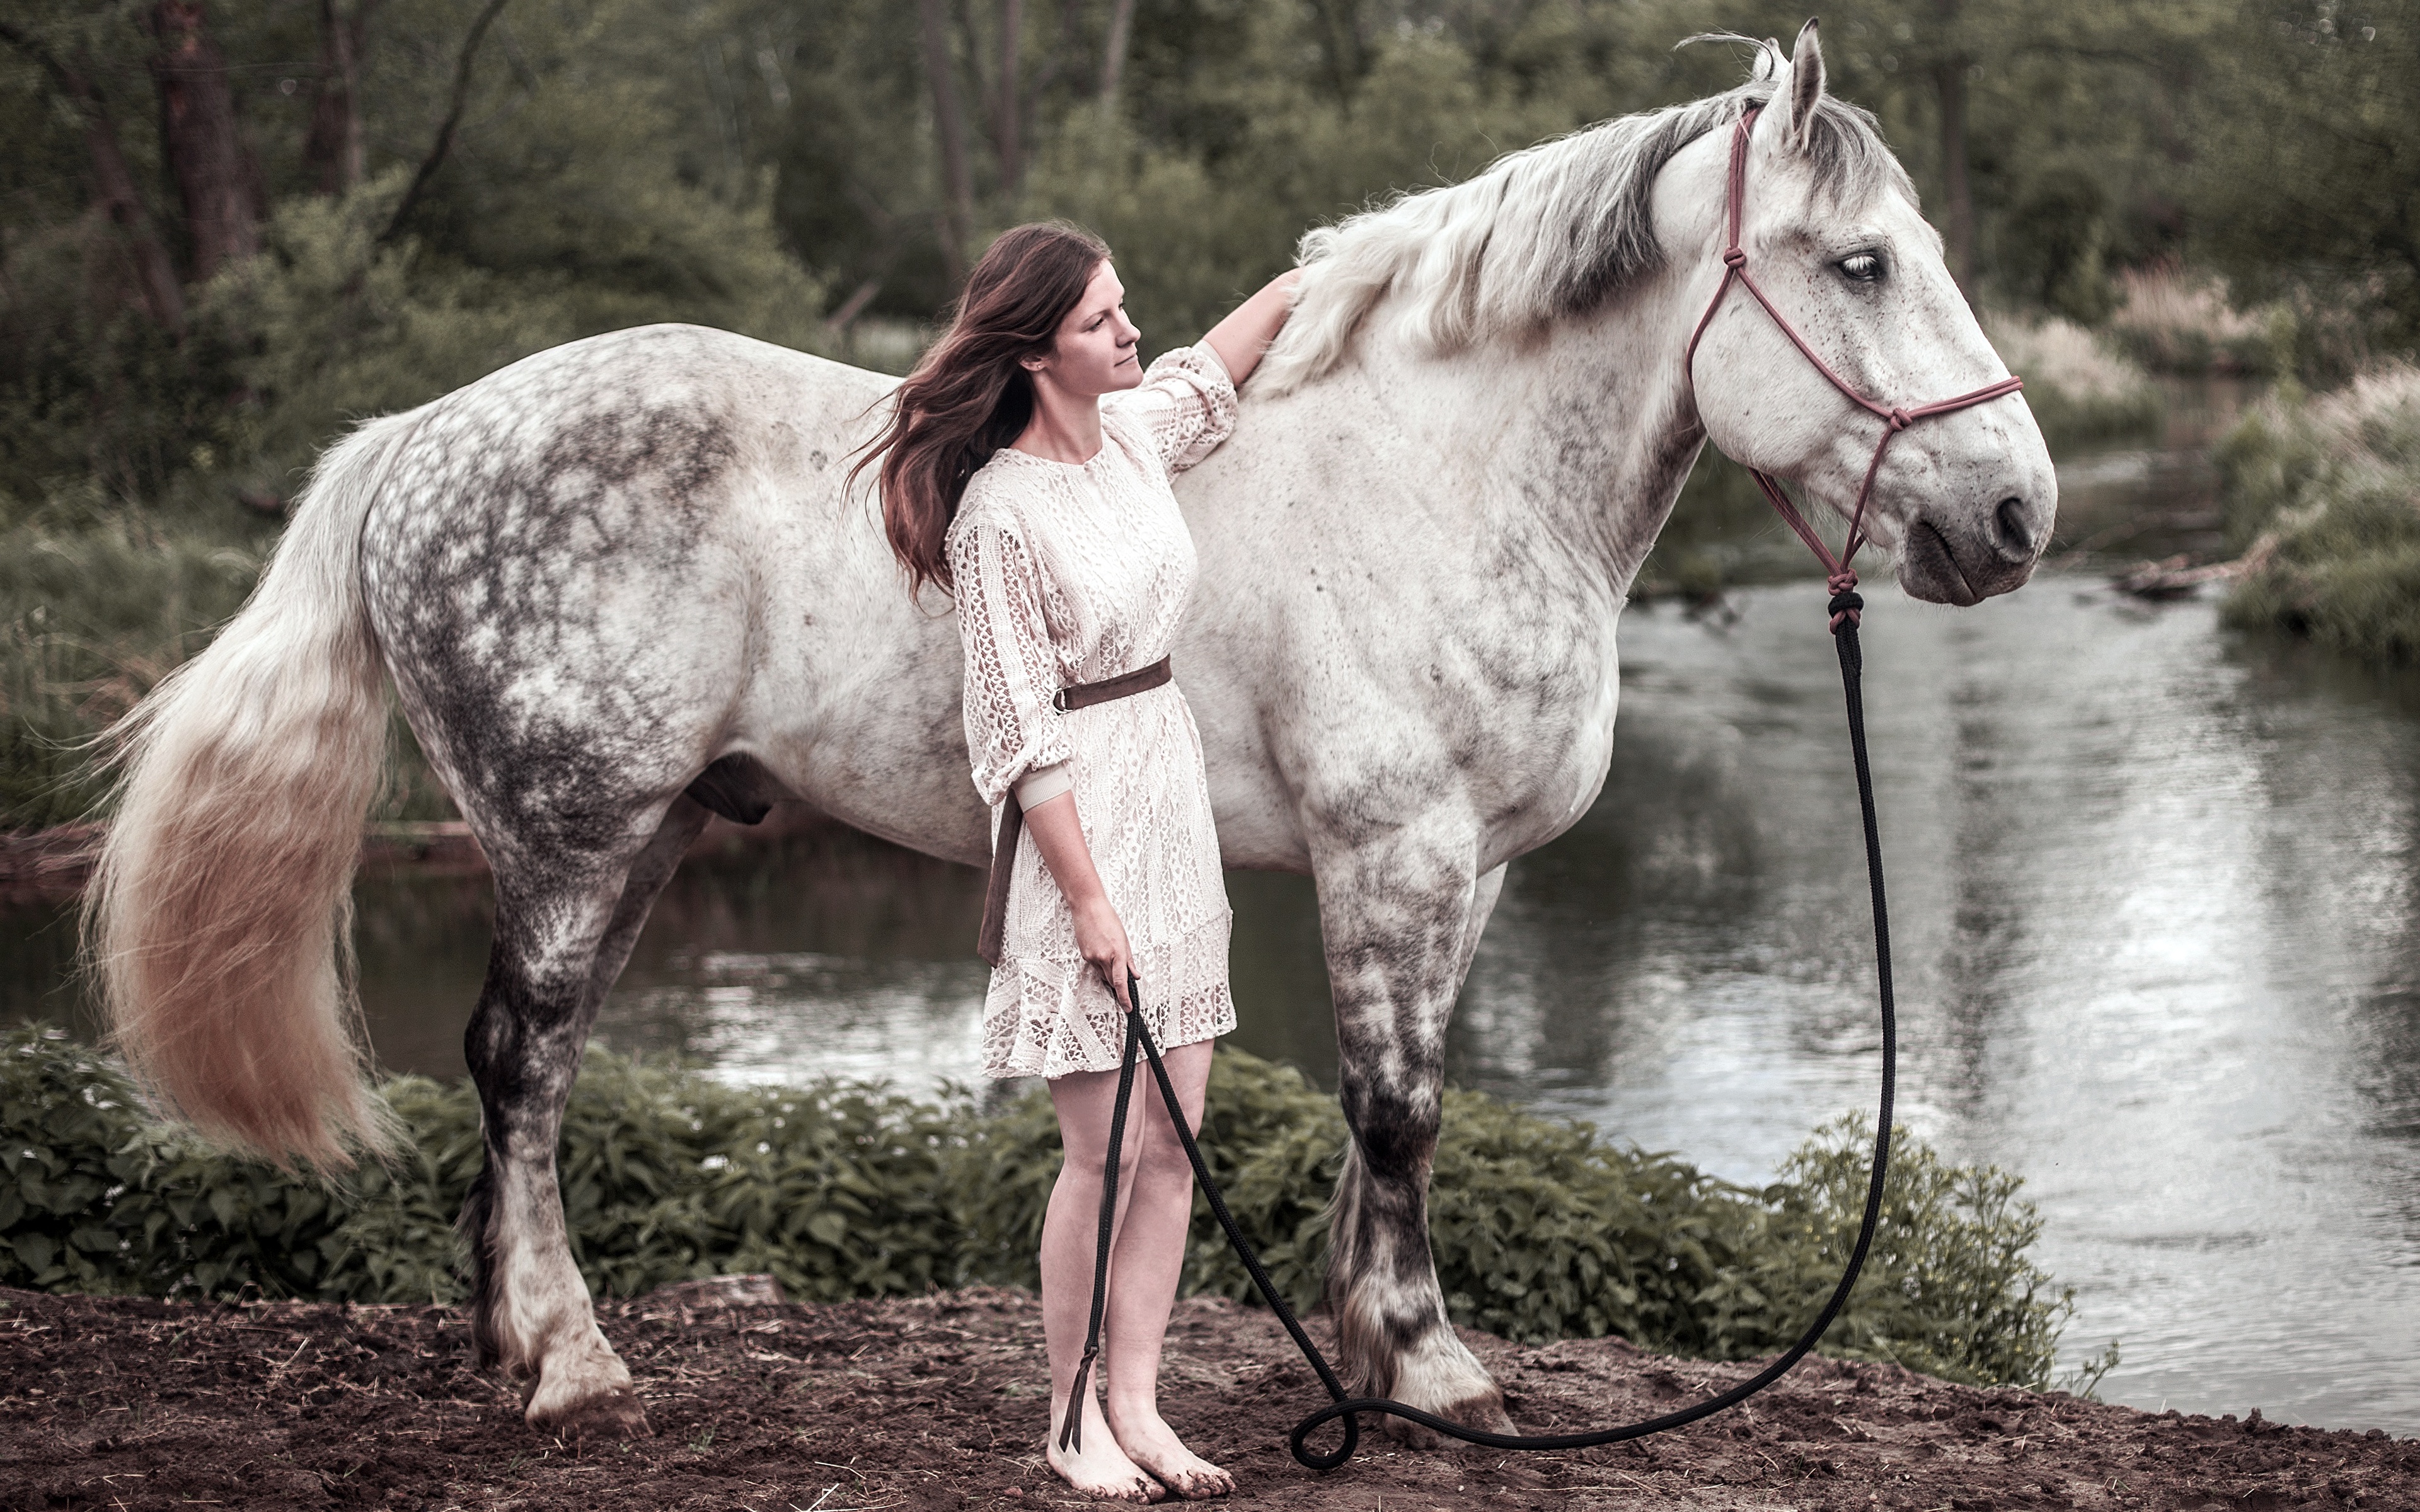 zdjęcie koń colt male młoda kobieta Widok z boku Zwierzęta 3840x2400 Konie dziewczyna Dziewczyny młode kobiety zwierzę